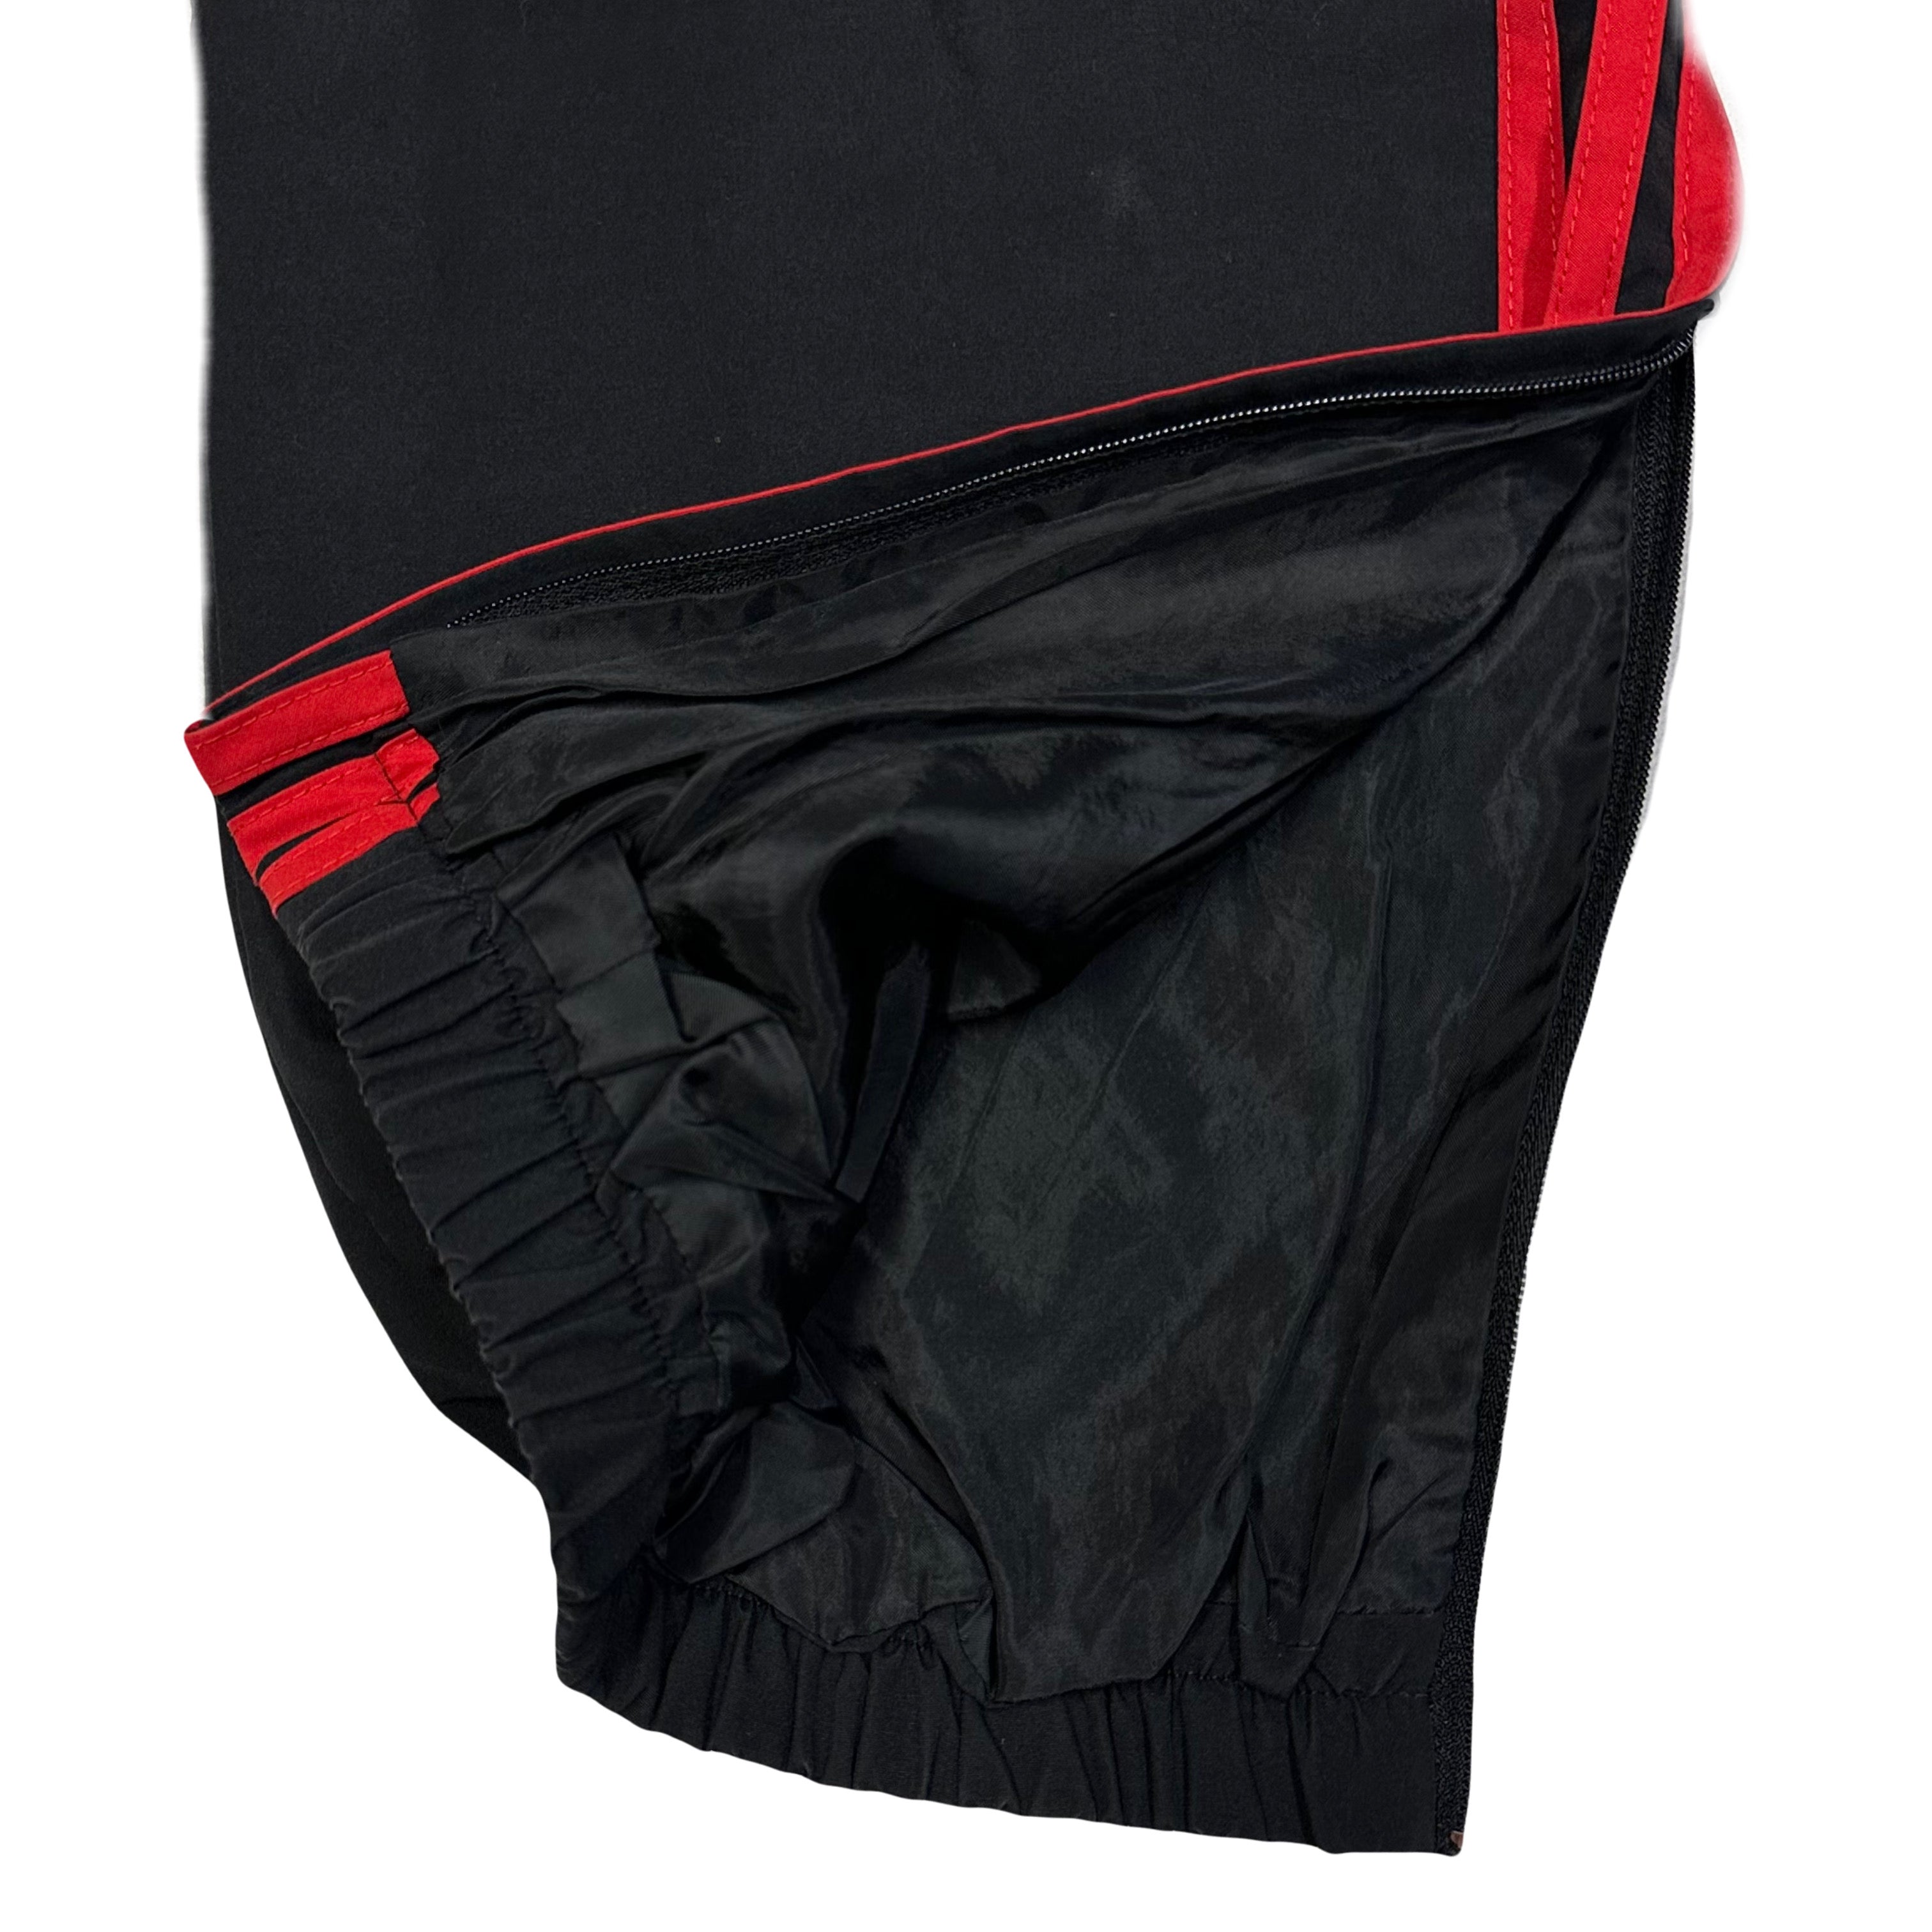 Adidas AC Milan 2011/12 Tracksuit In Black & Red ( M )